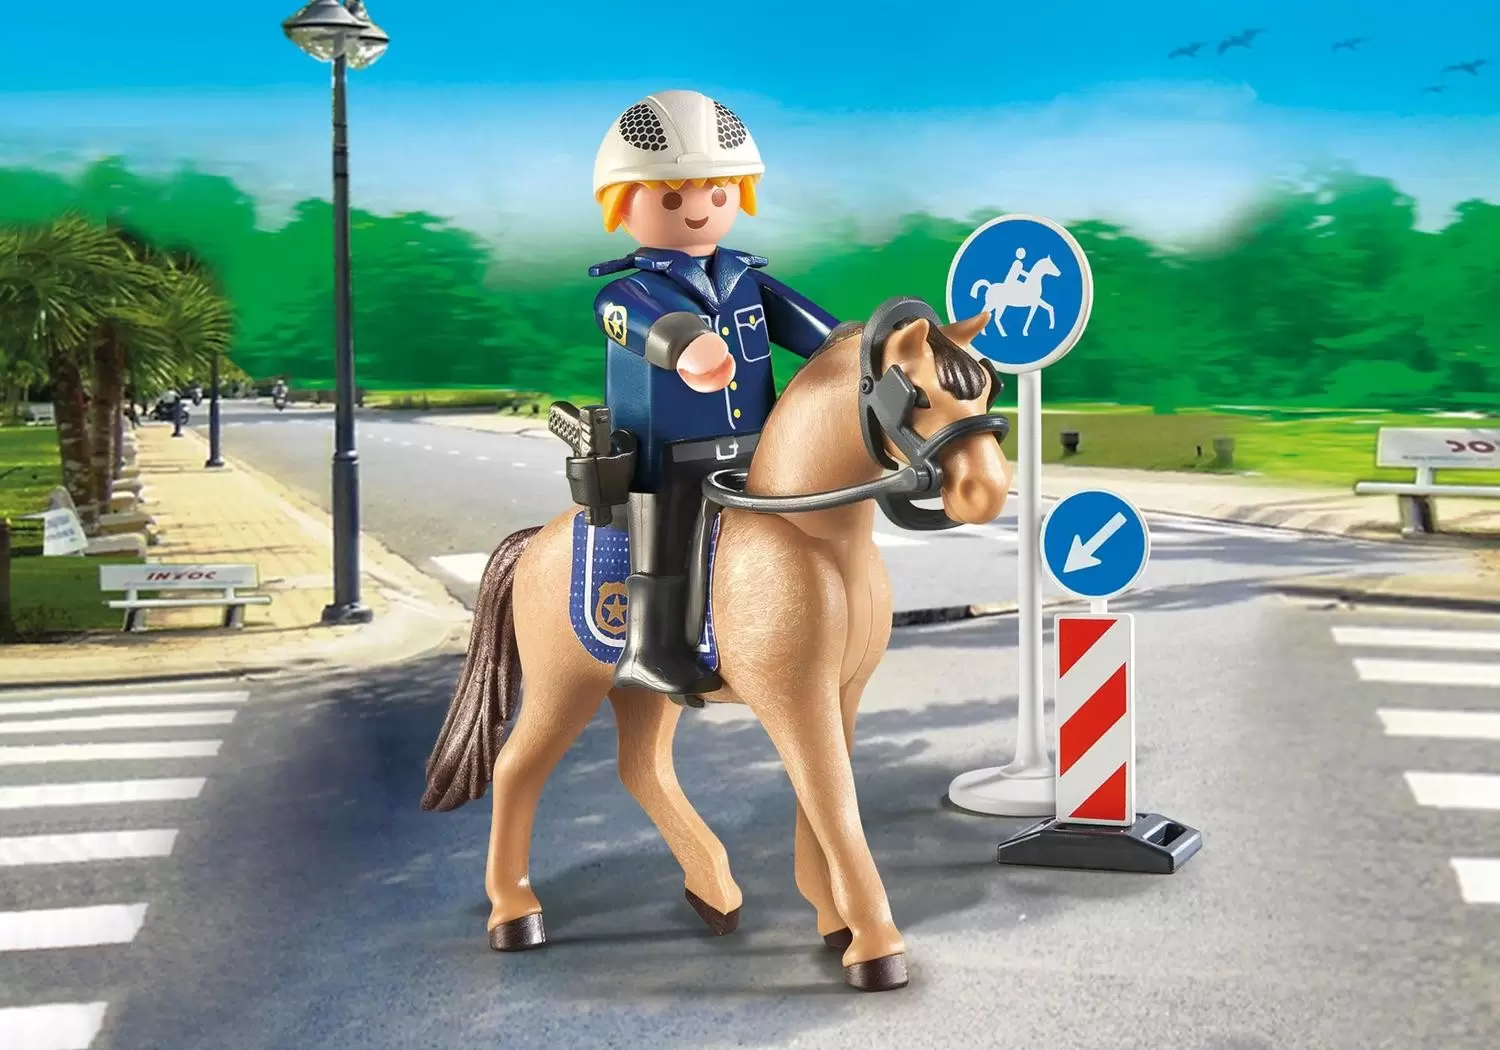 Police Playmobil - Mounted policeman